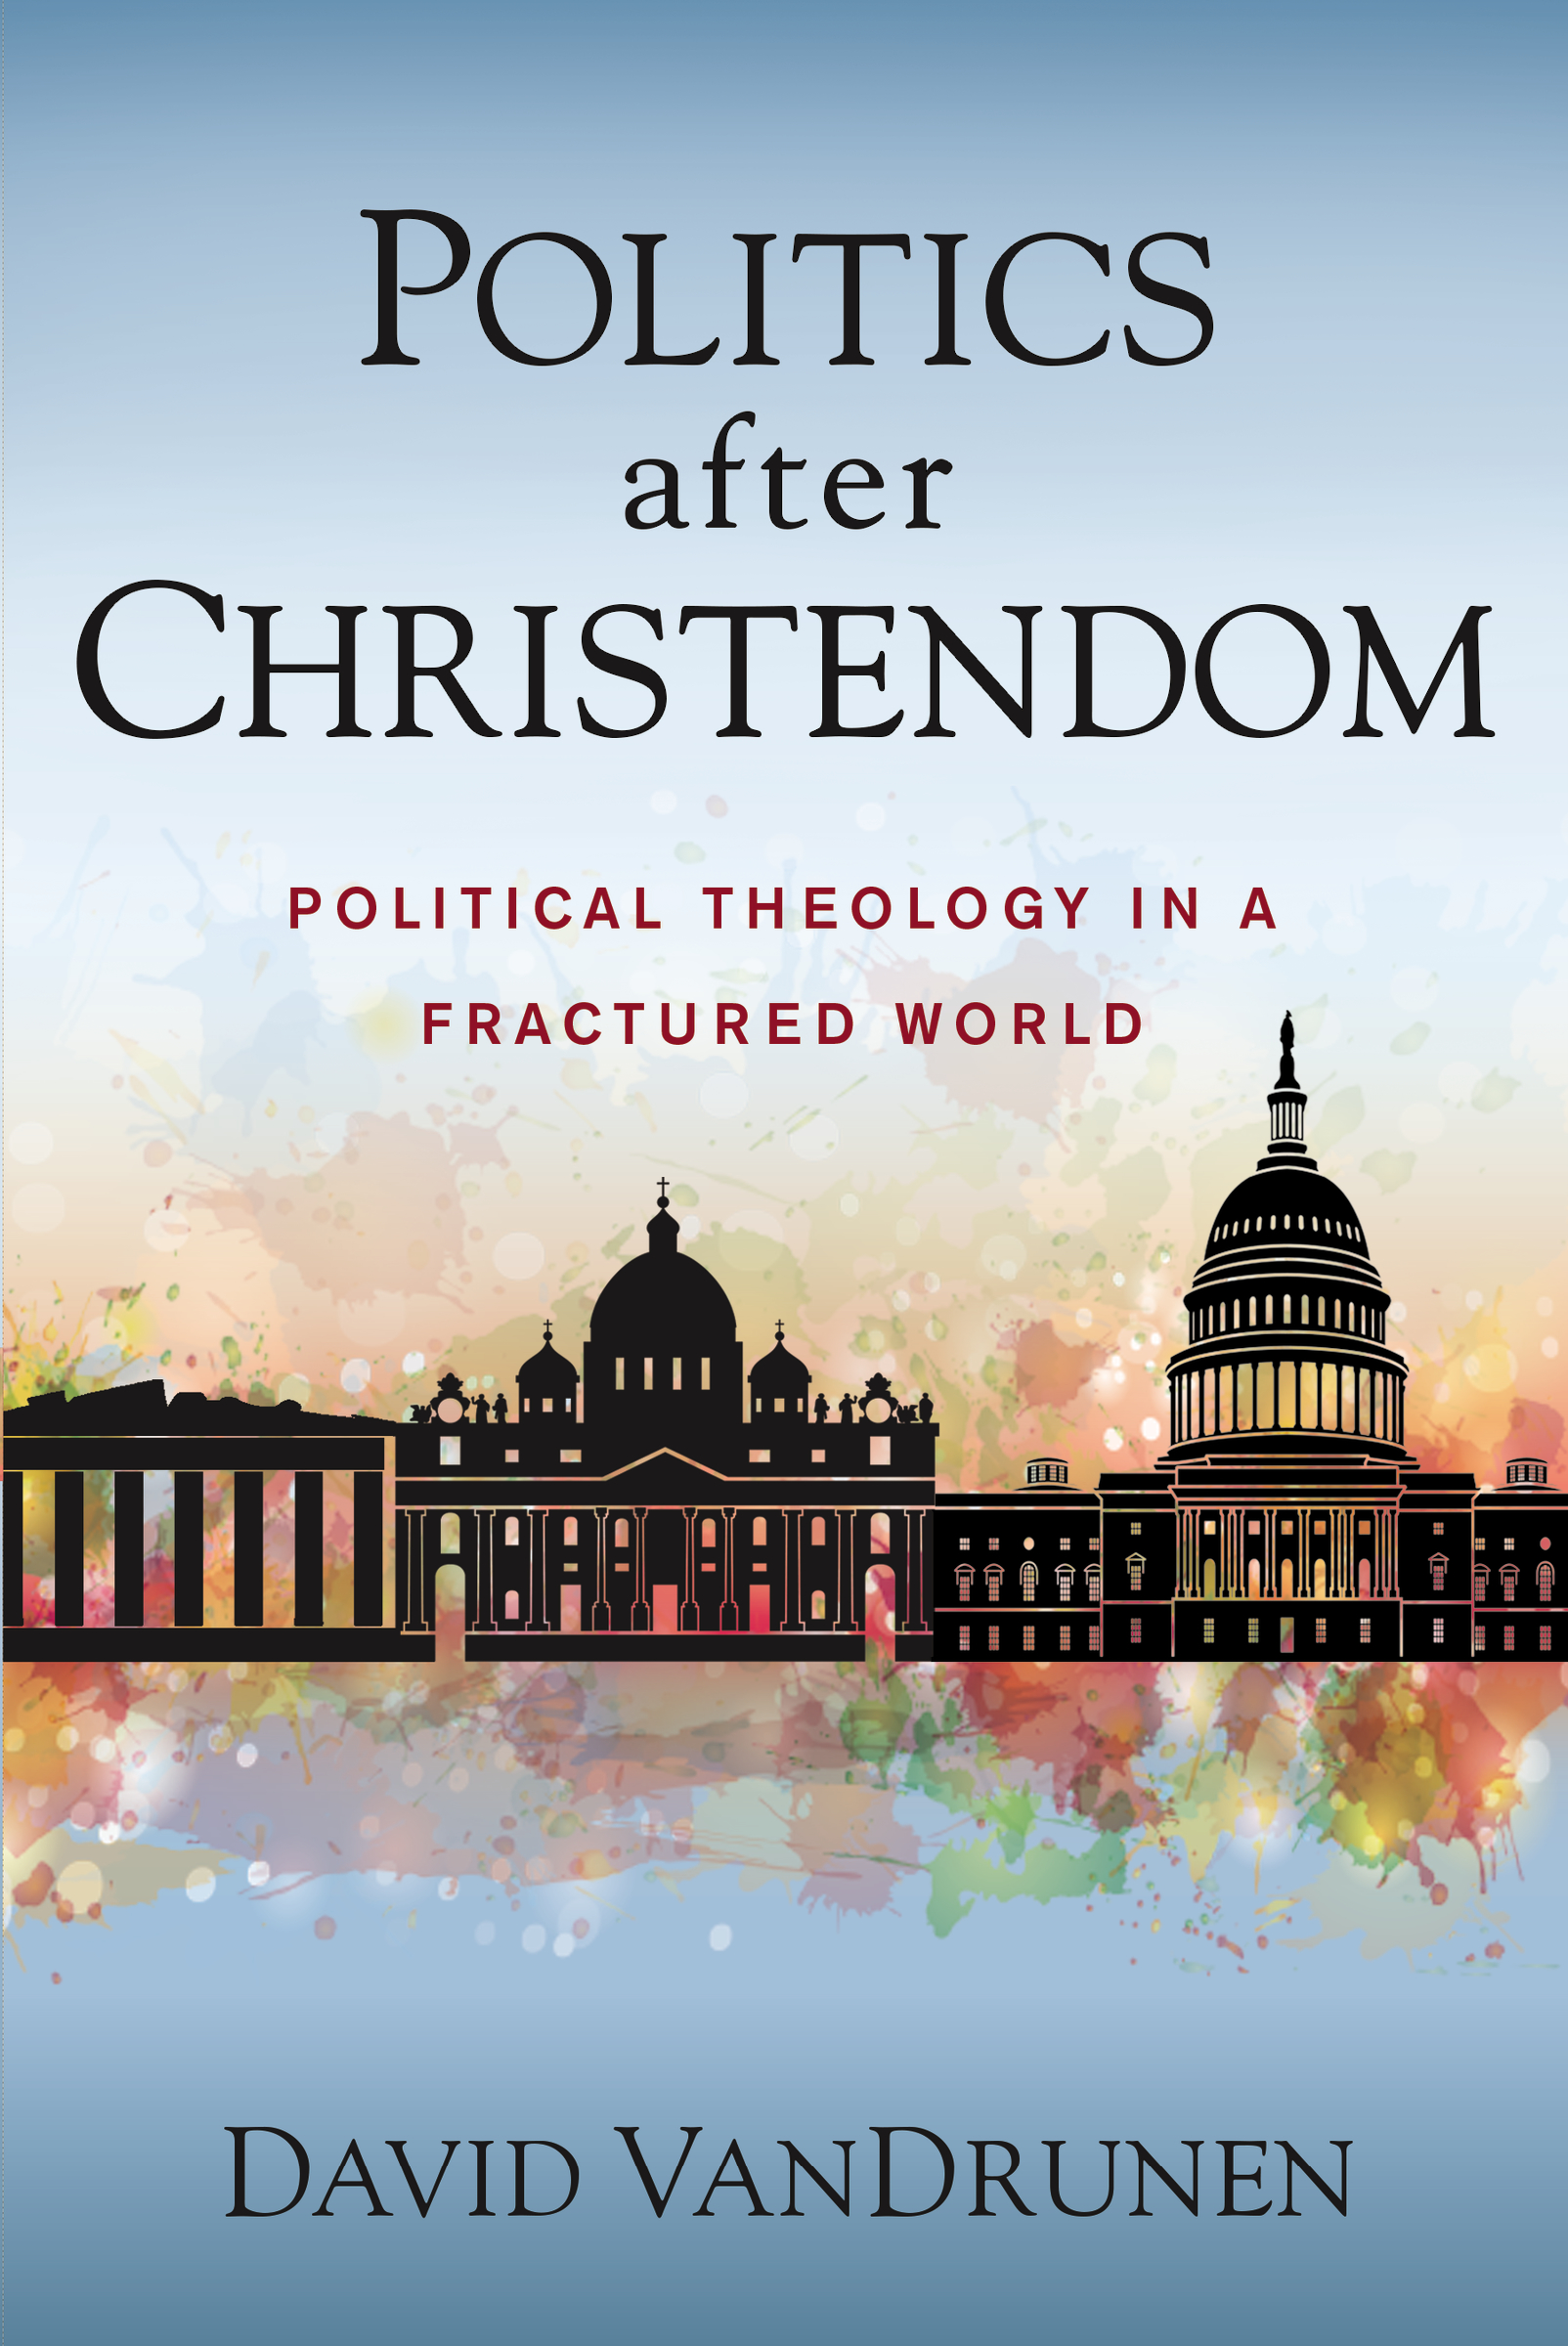 Politics after Christendom